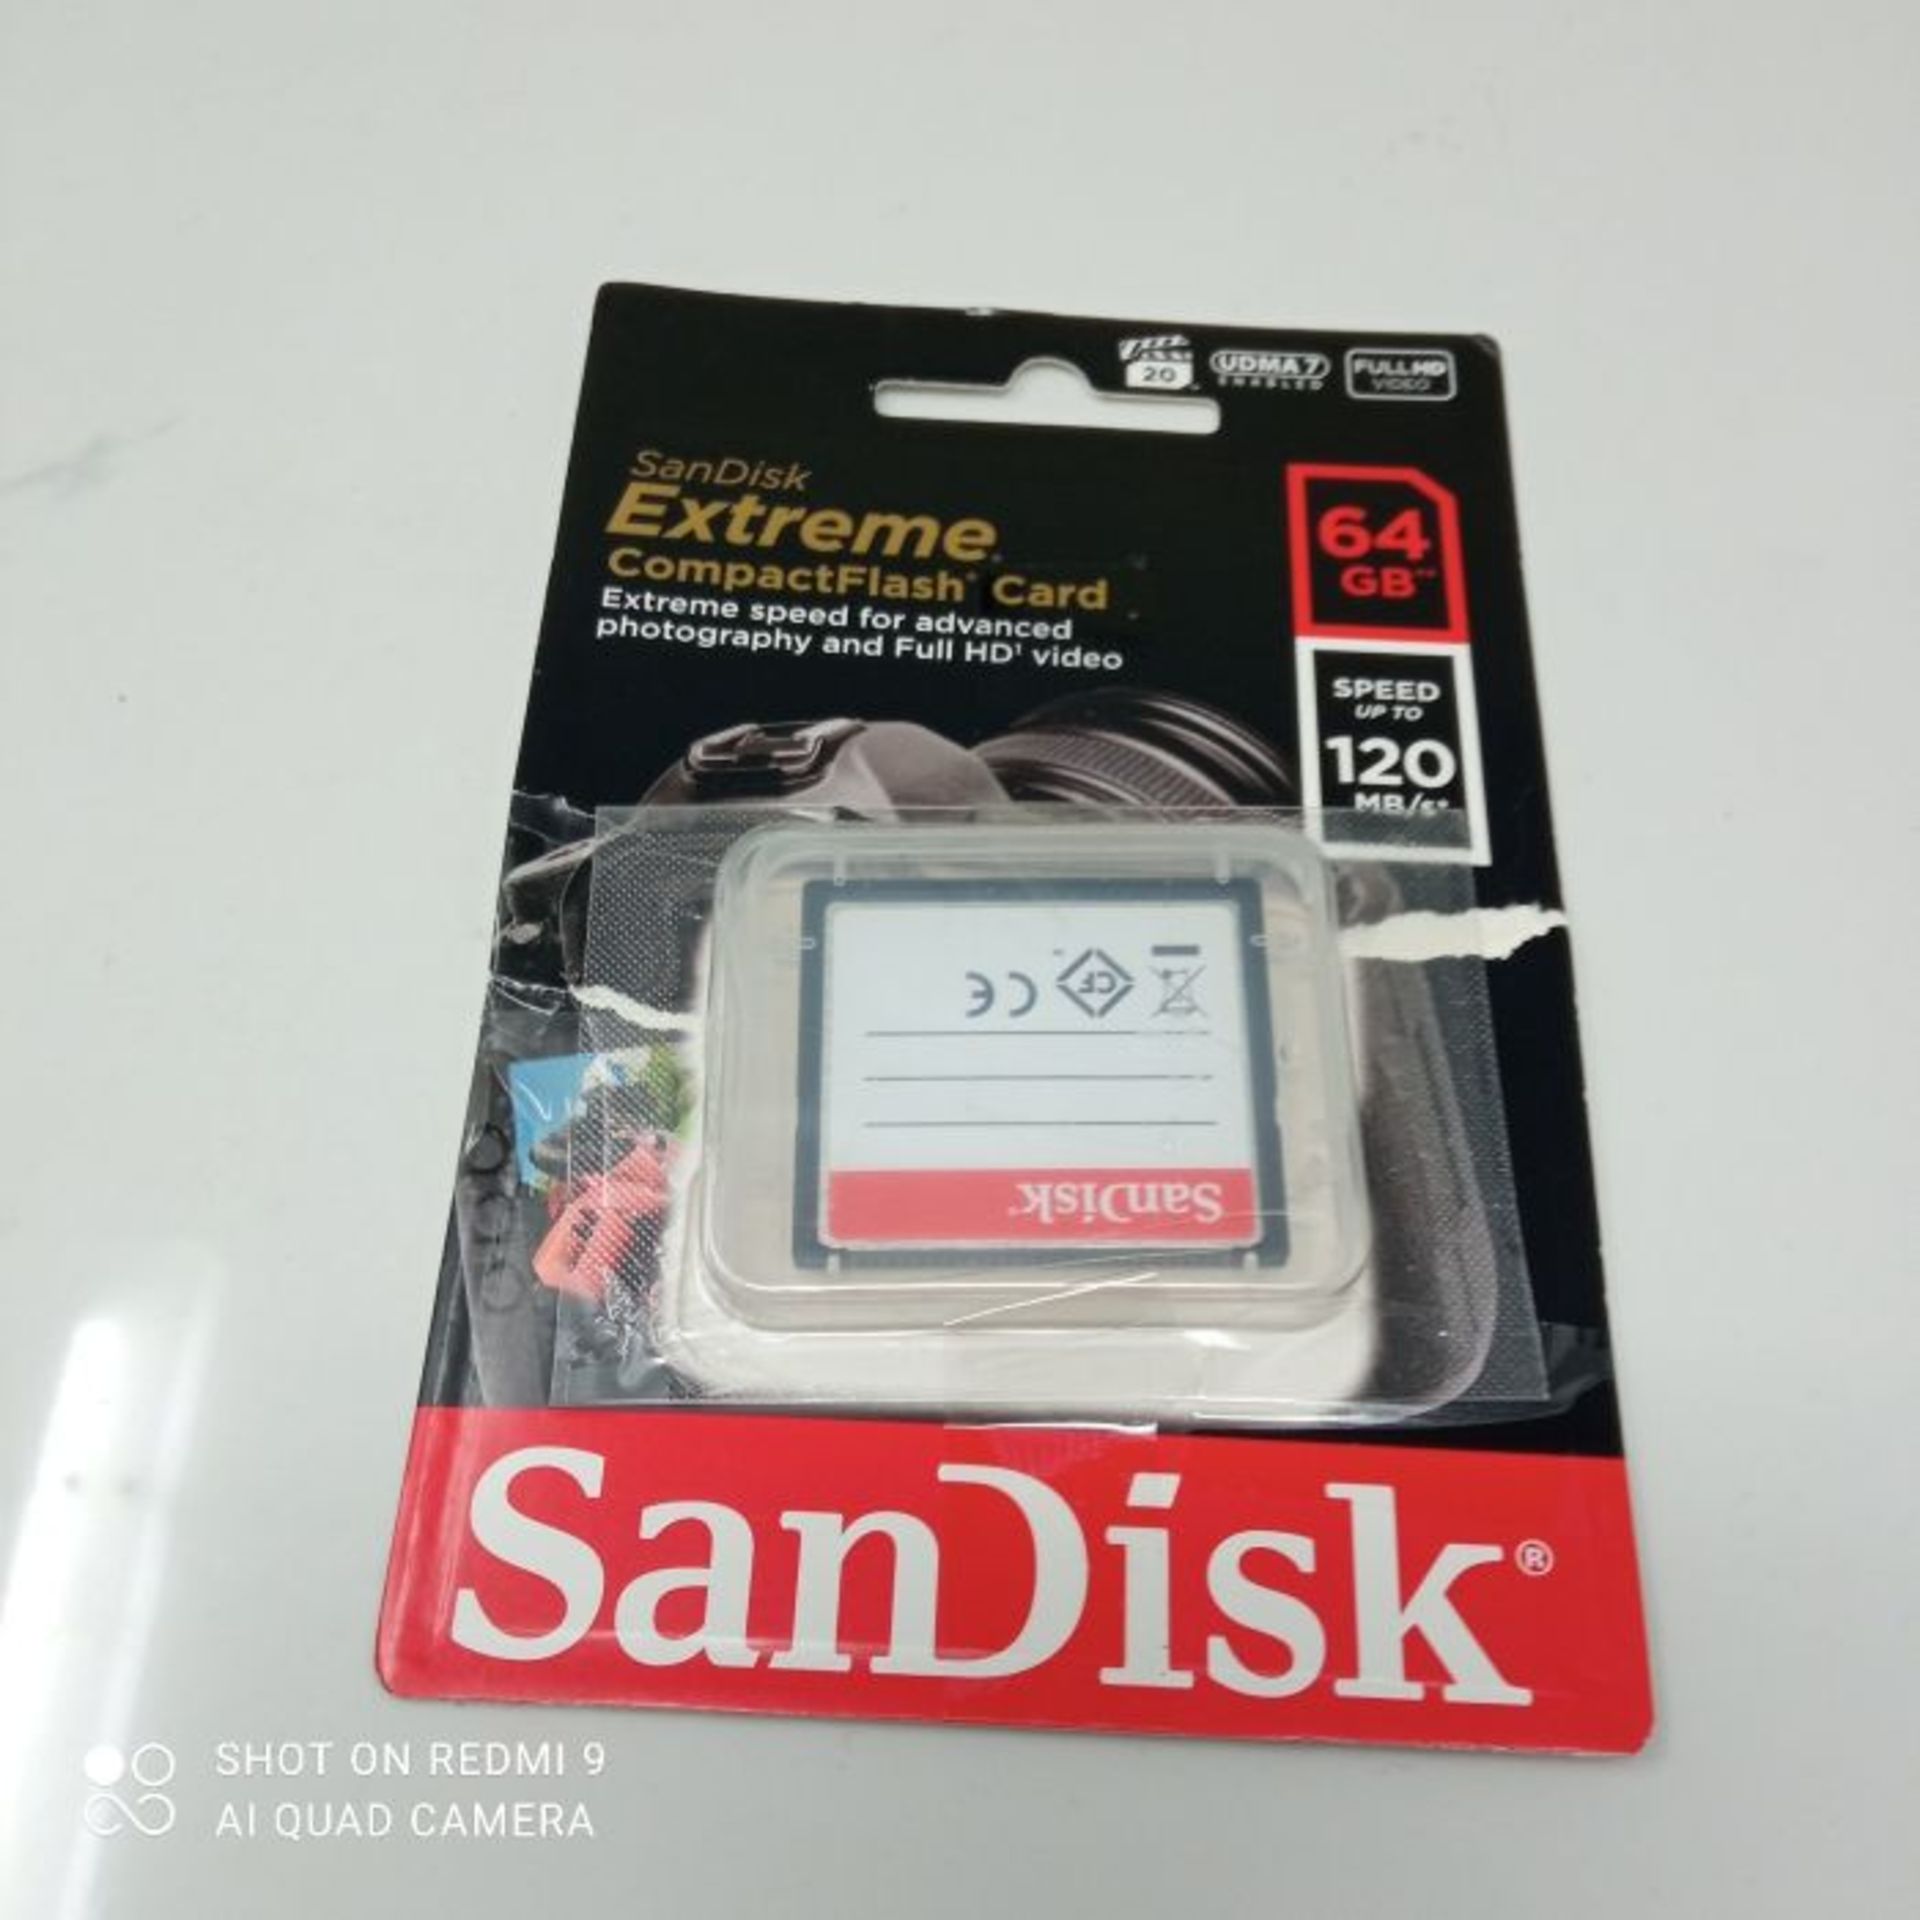 SanDisk Extreme 64 GB UDMA7 CompactFlash Card - Black/Gold - Image 2 of 2